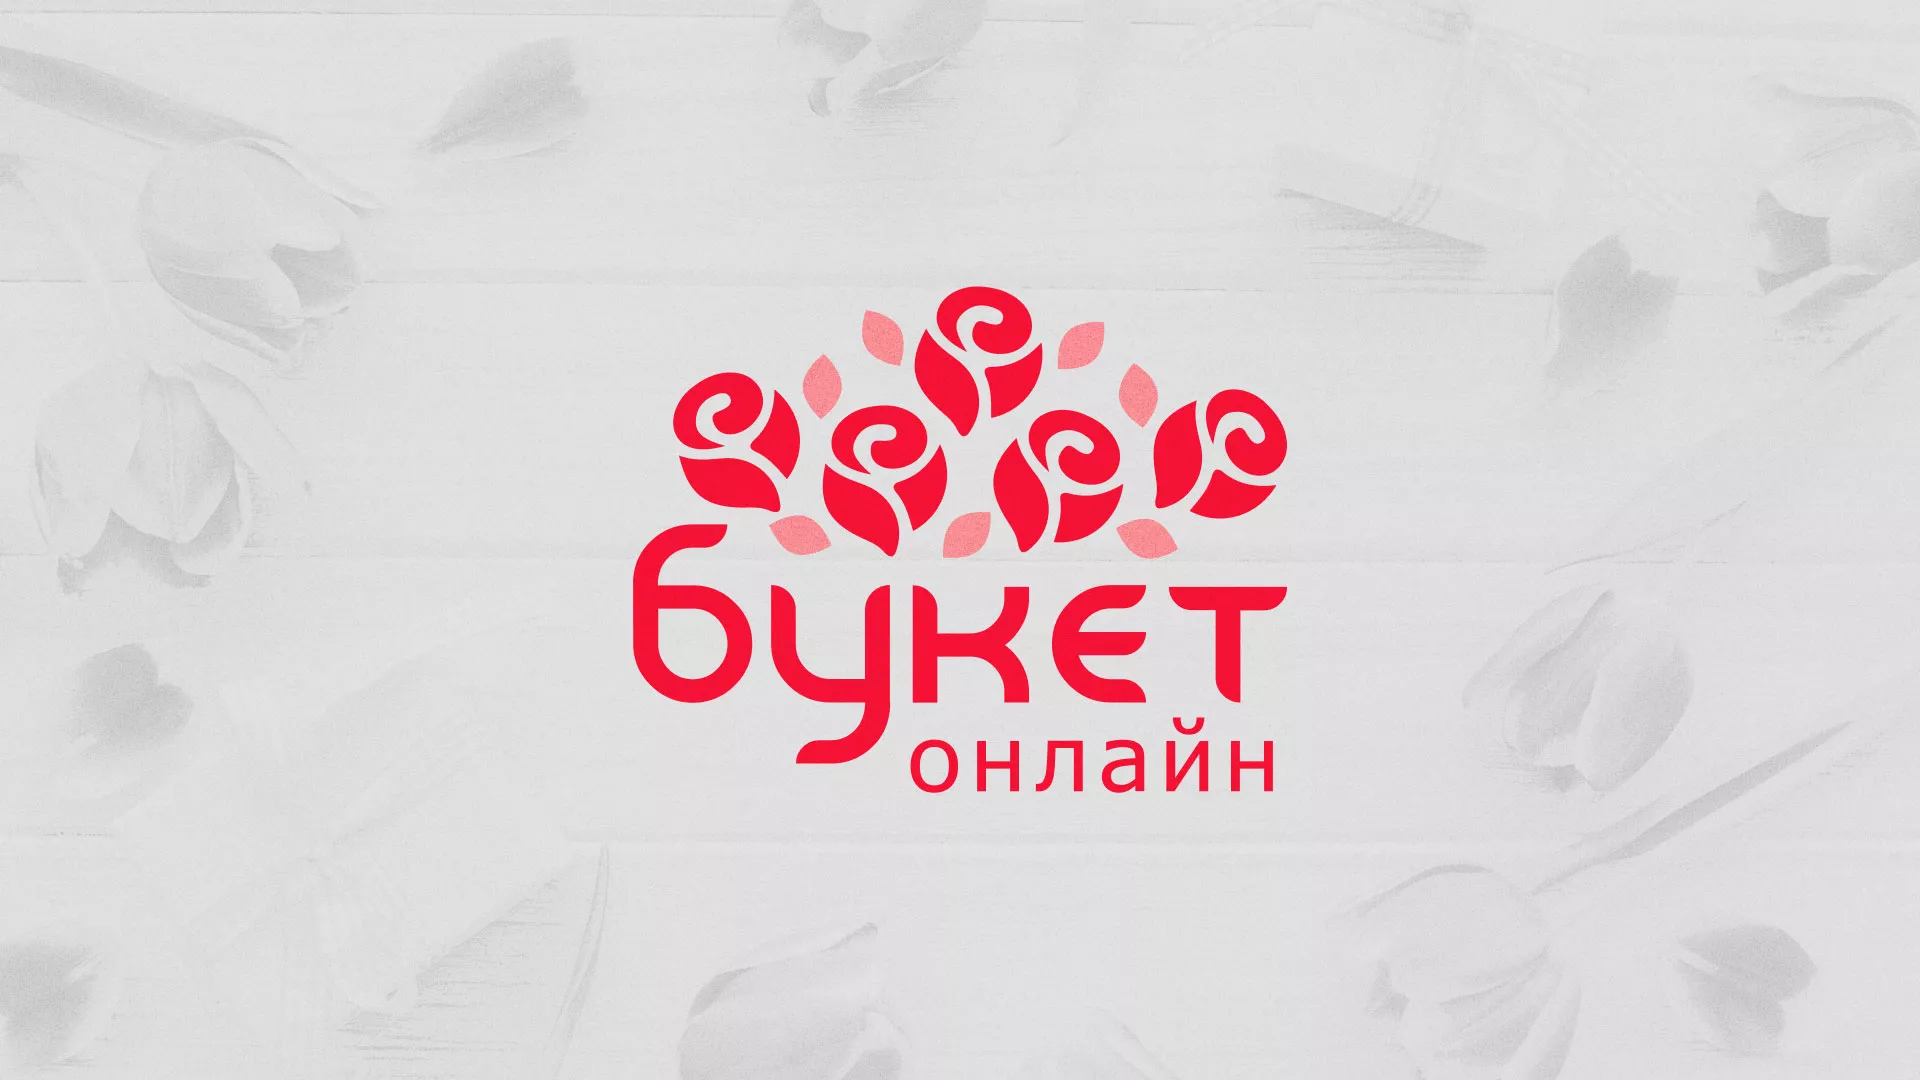 Создание интернет-магазина «Букет-онлайн» по цветам в Костроме